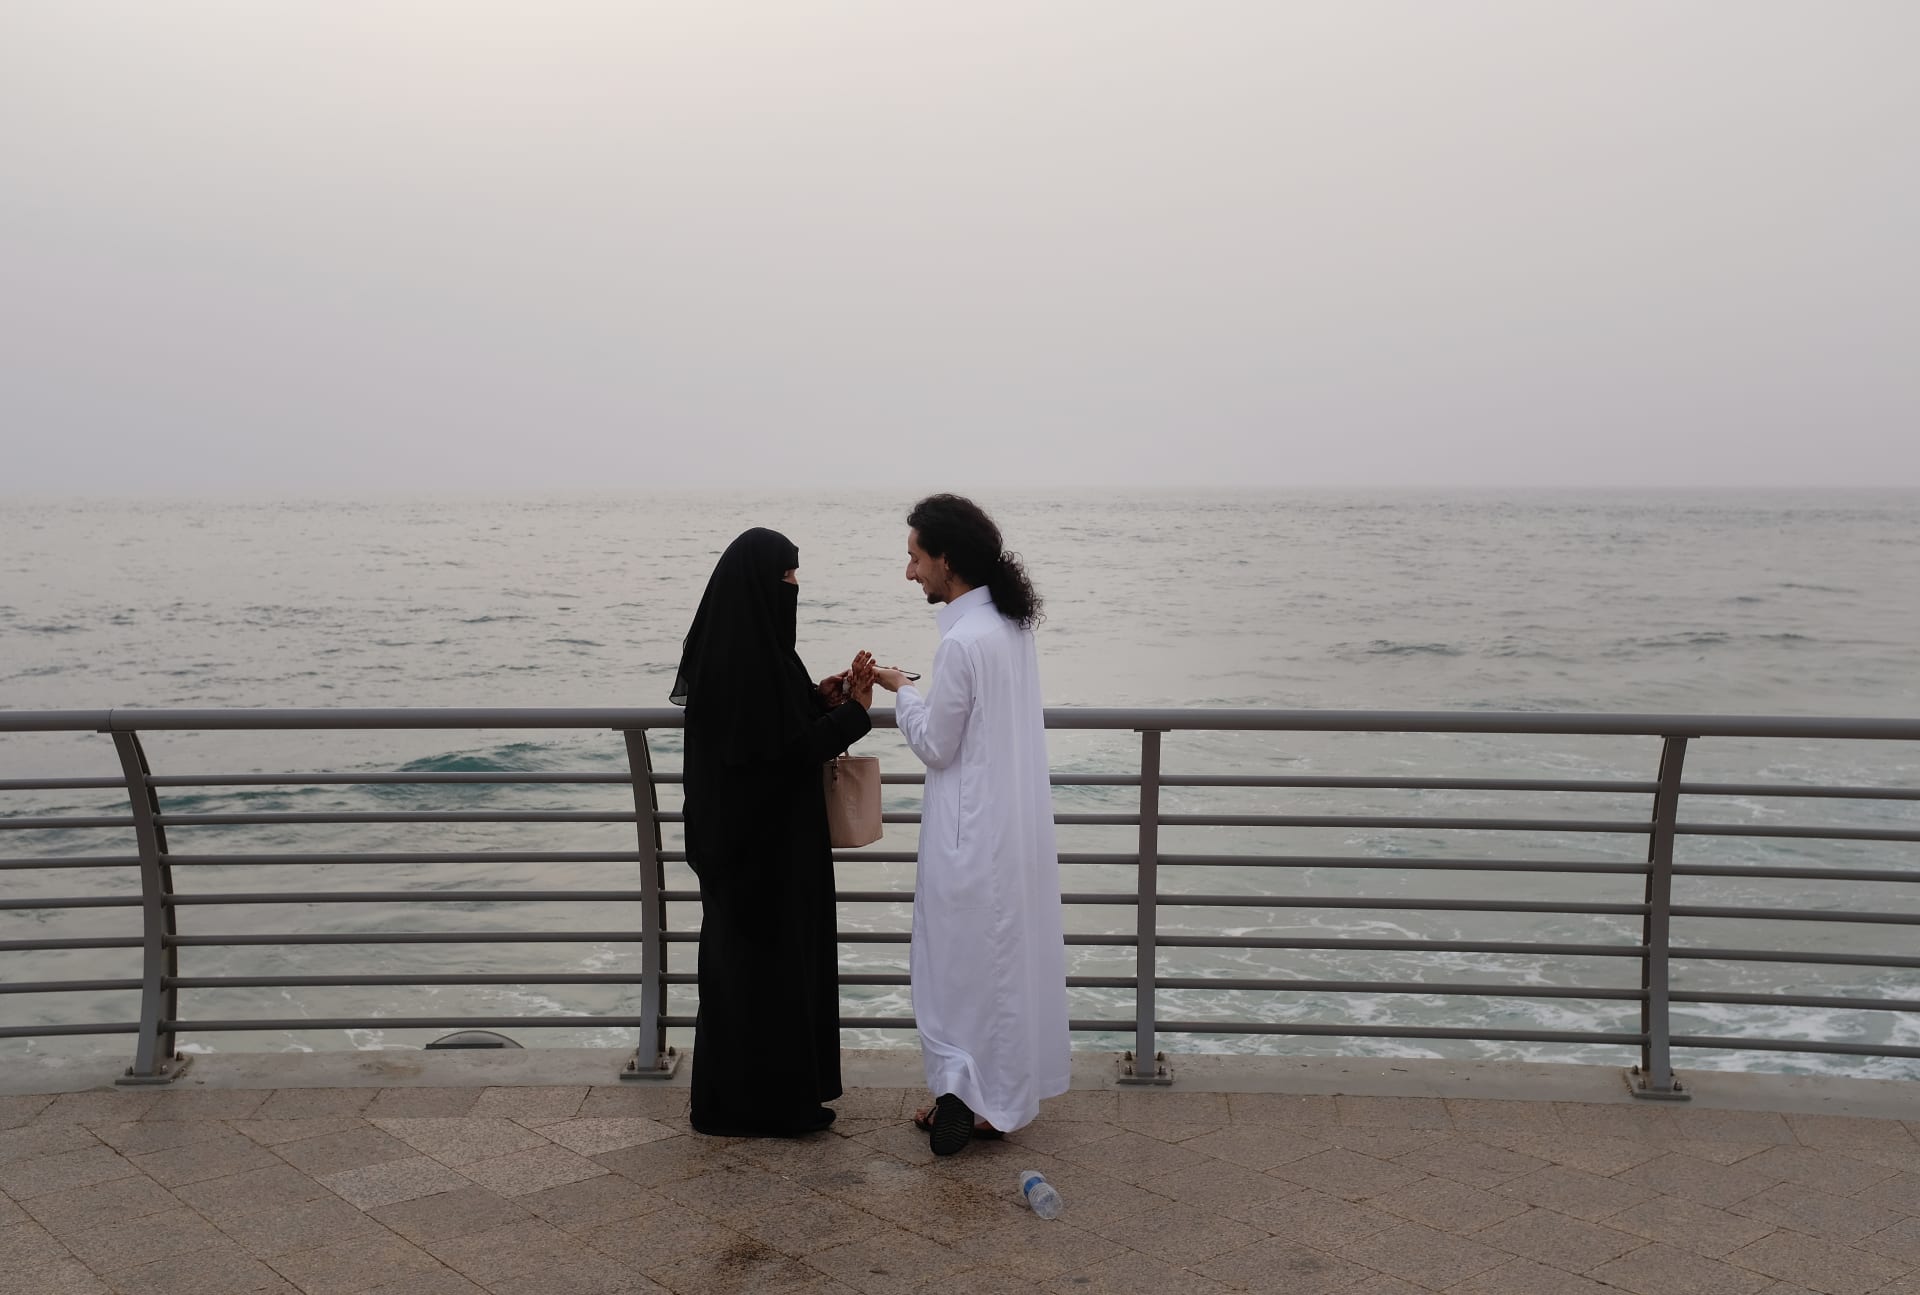 مستشار شرعي بالسعودية: التعارف قبل الزواج مباح.. والتوسع بـ"سد الذرائع" لن يبقي للناس شيئا